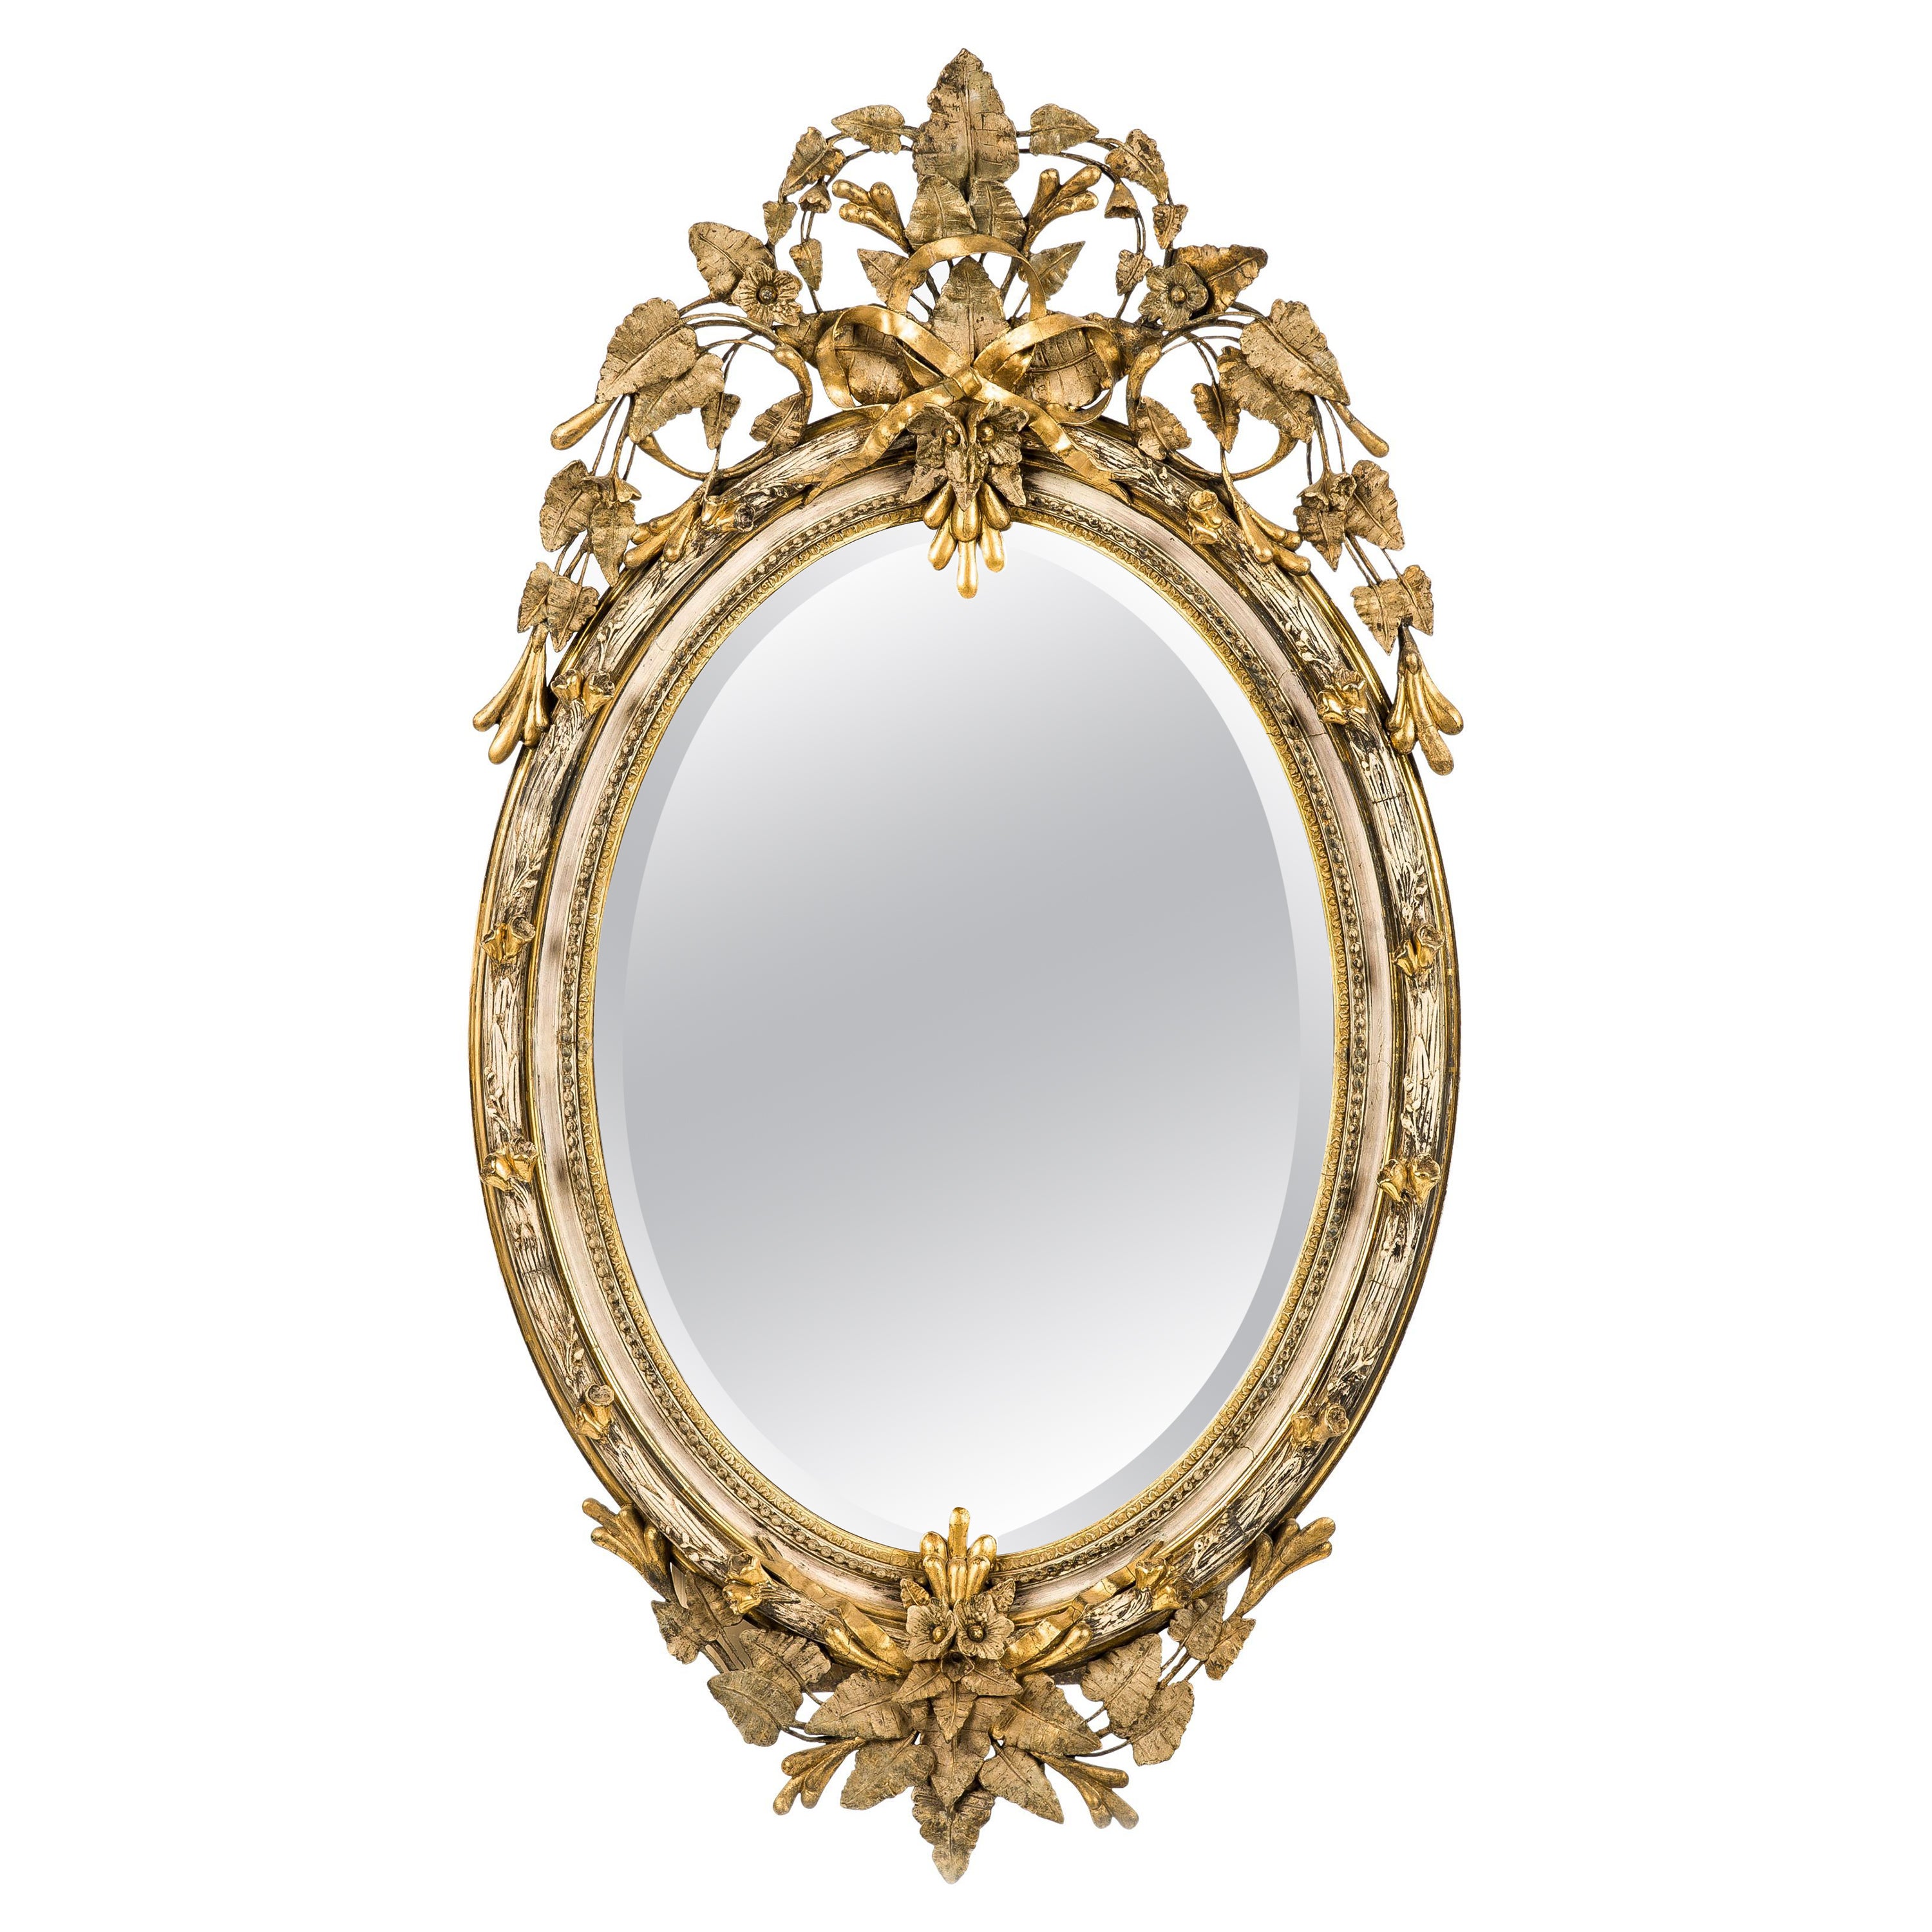 Grand miroir ovale français ancien du 19ème siècle, doré à l'or avec crête en vente